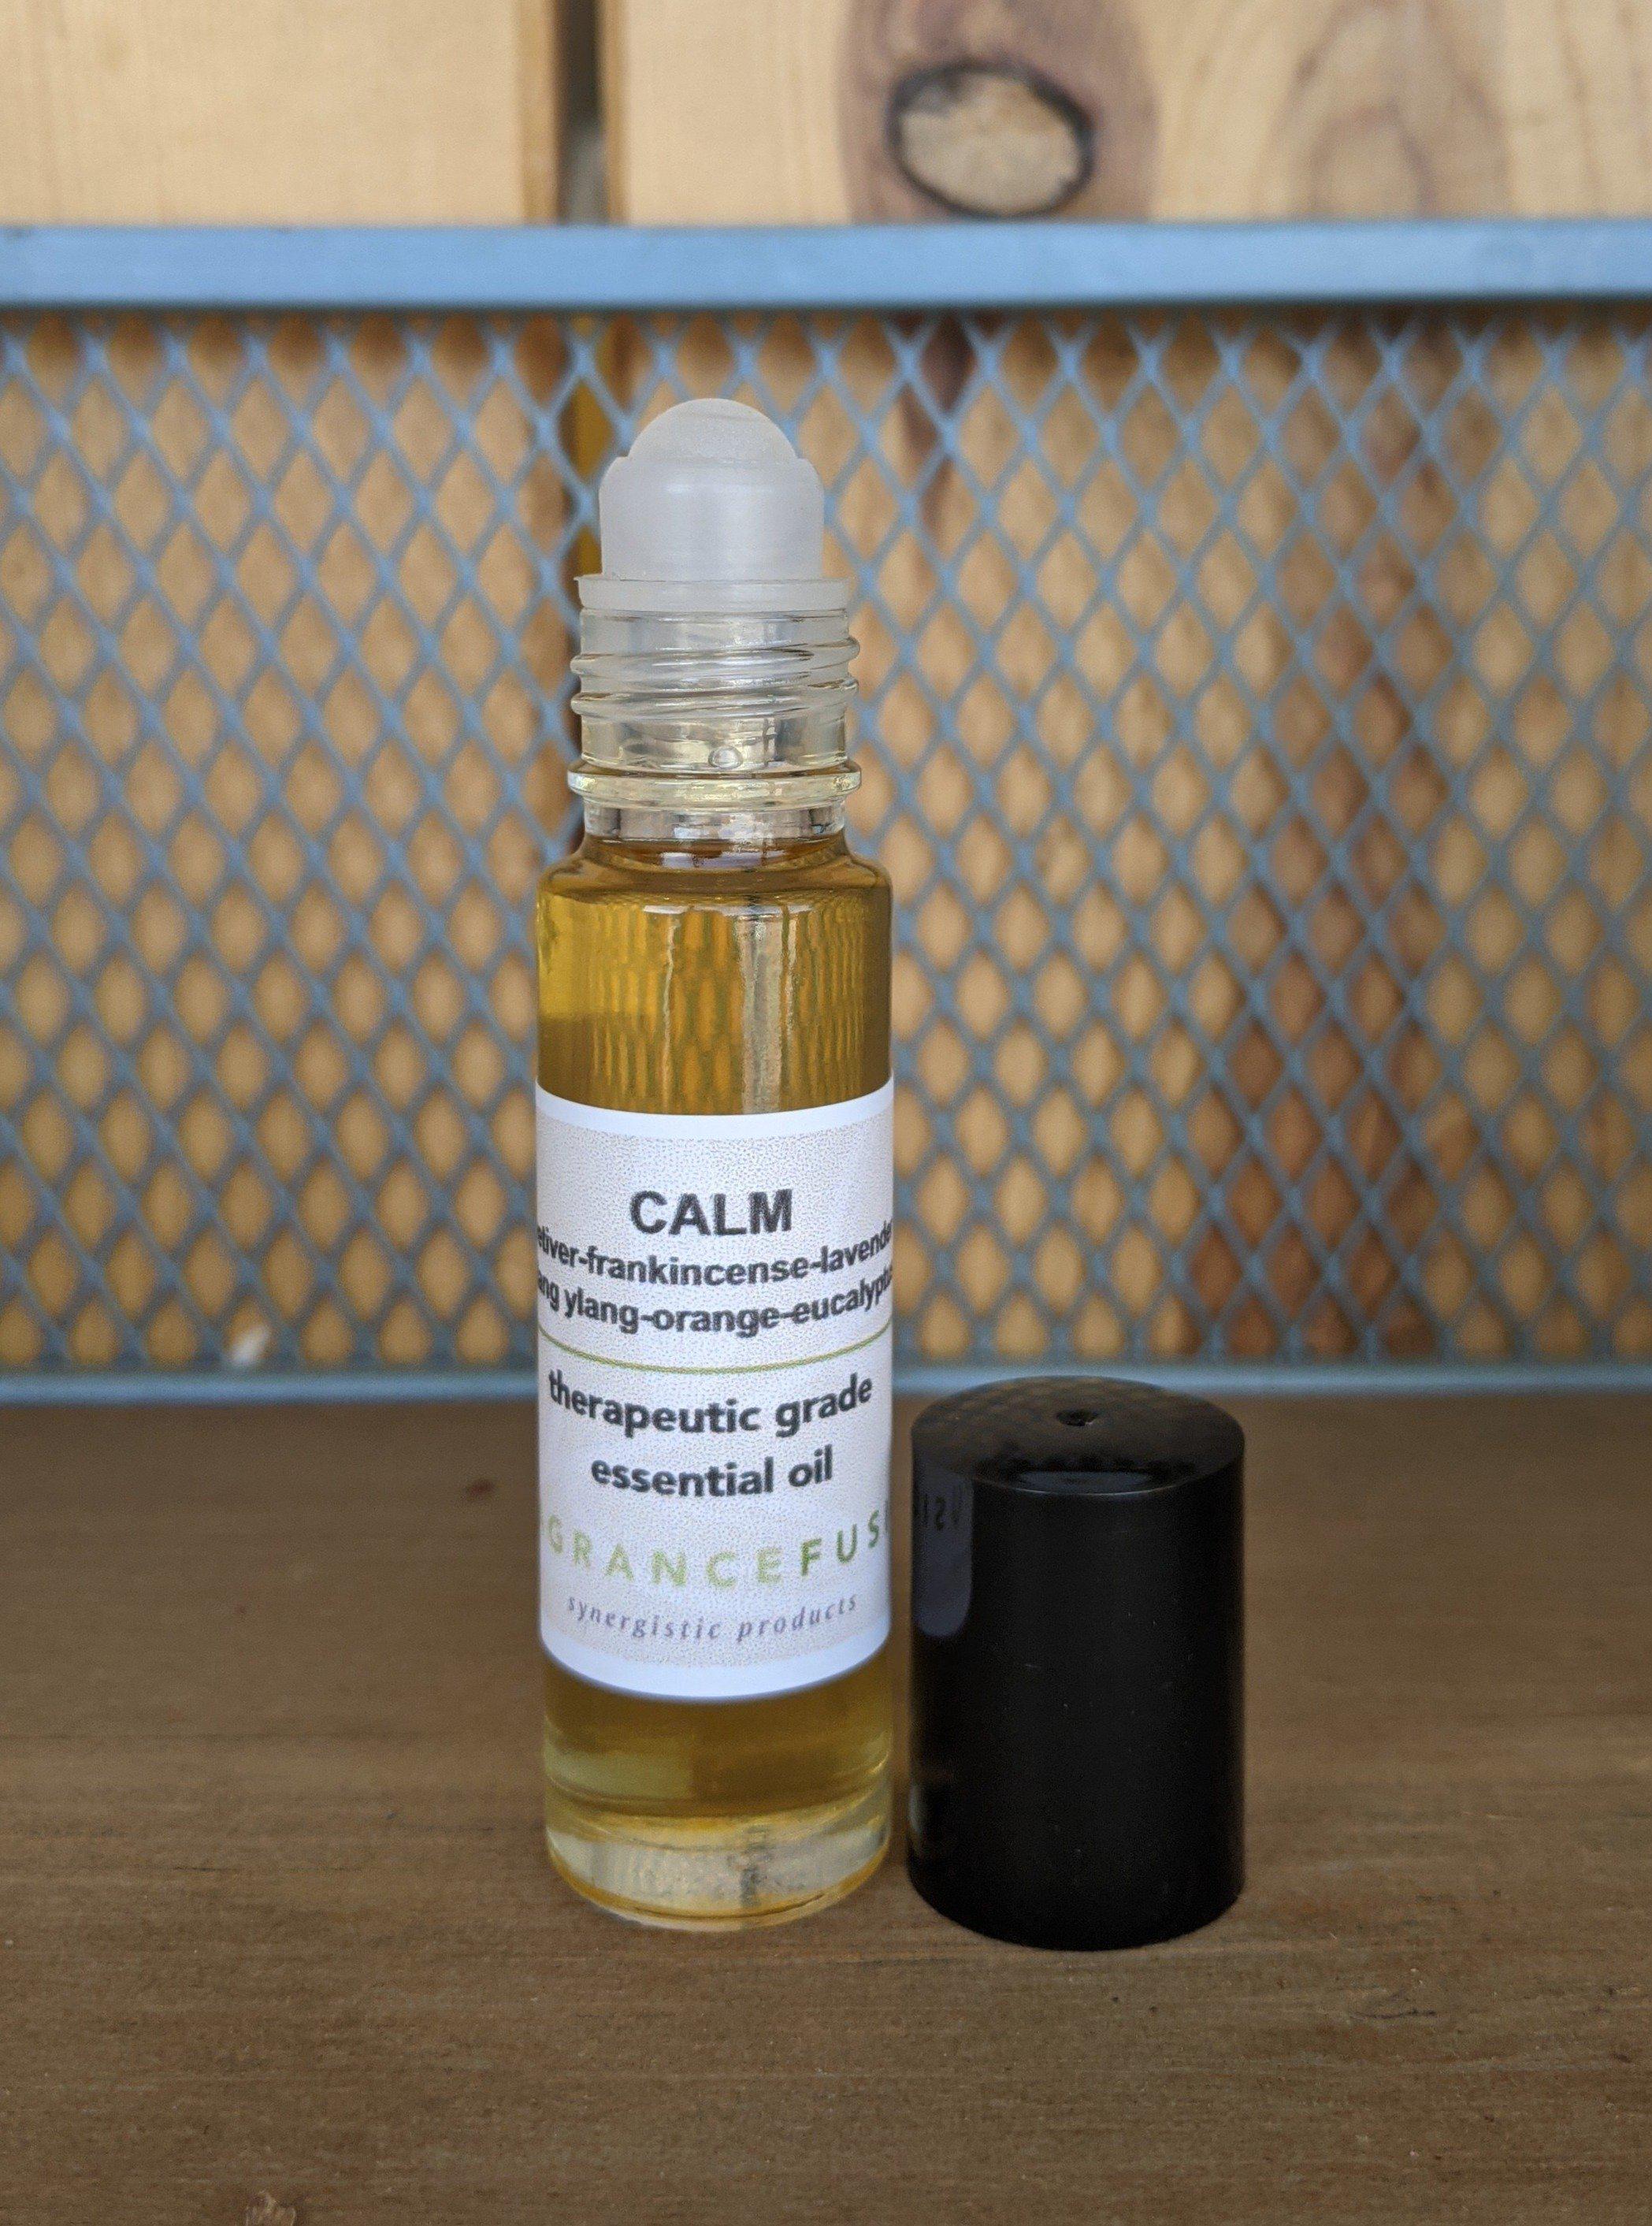 CALM essential oil blend